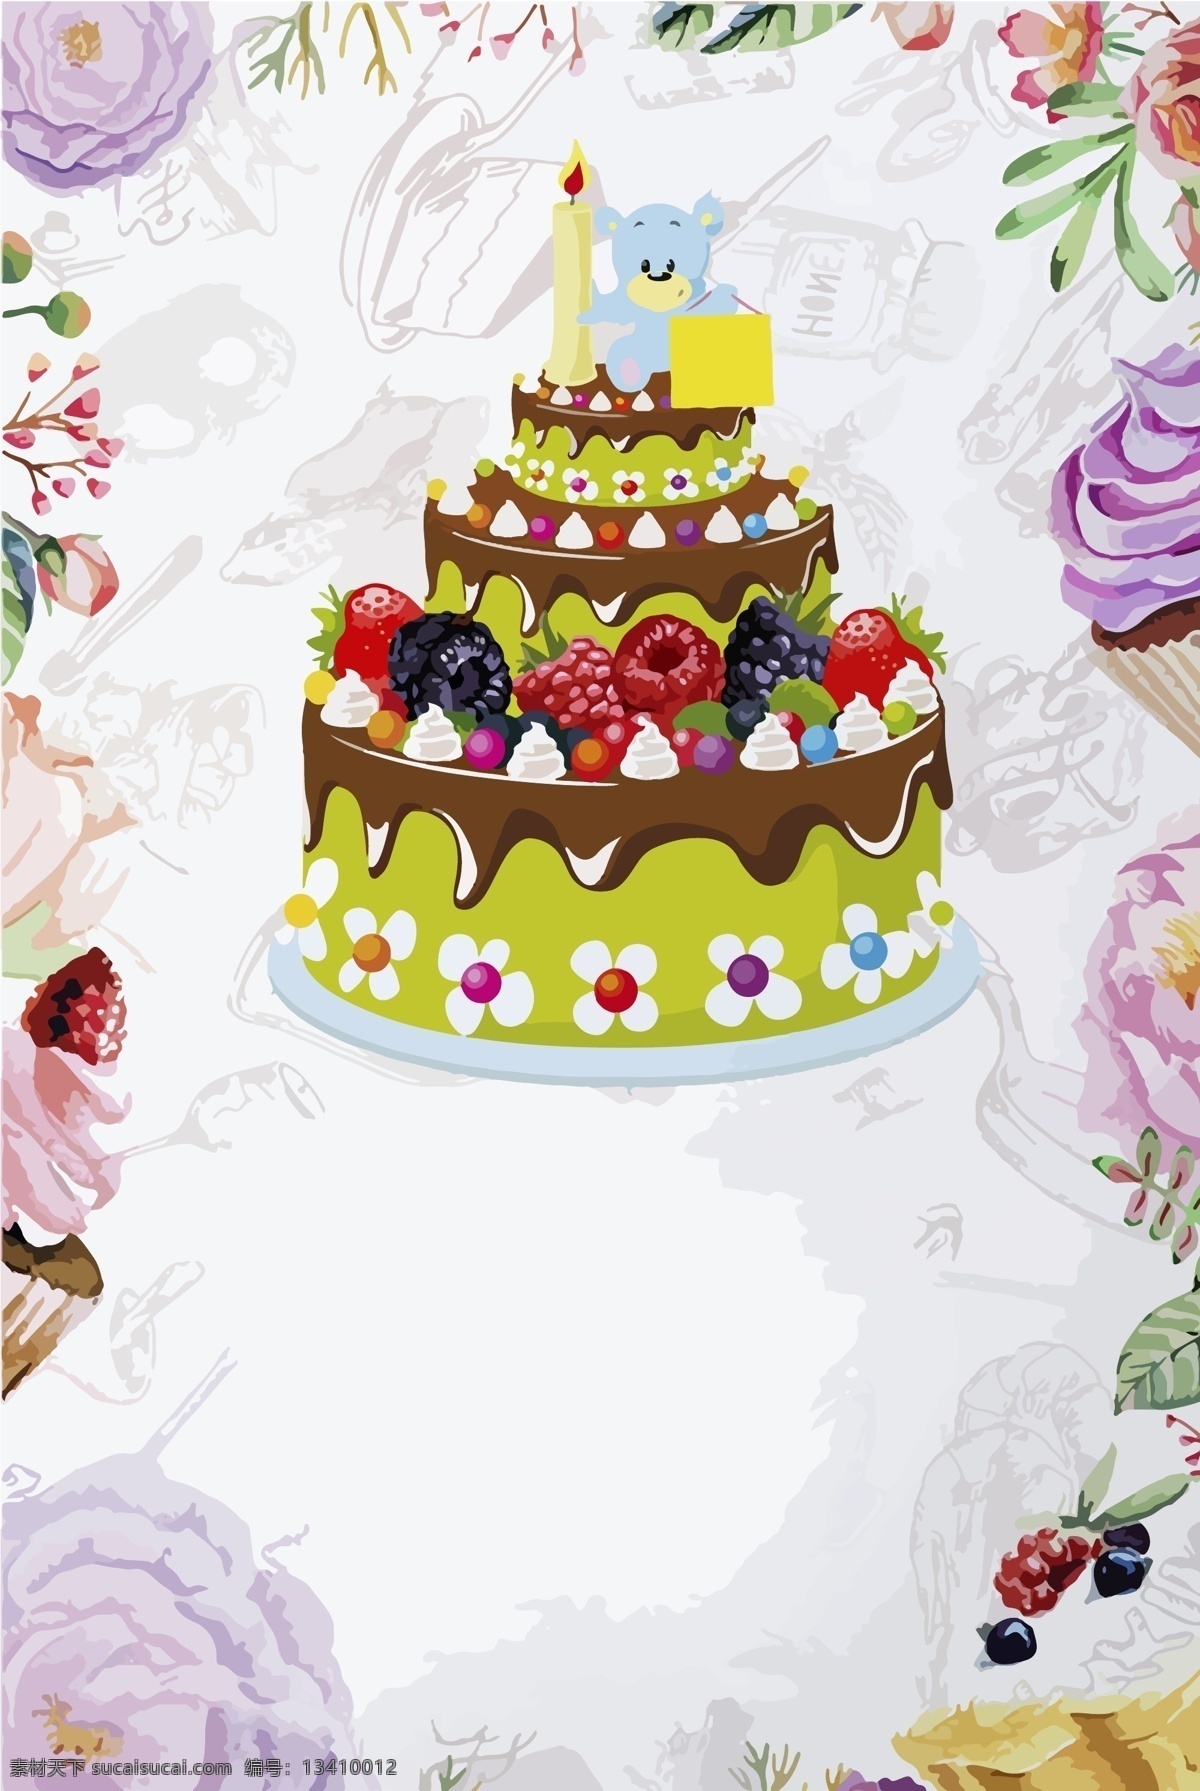 卡通 生日蛋糕 手绘 背景 图 生日 蛋糕 包装设计